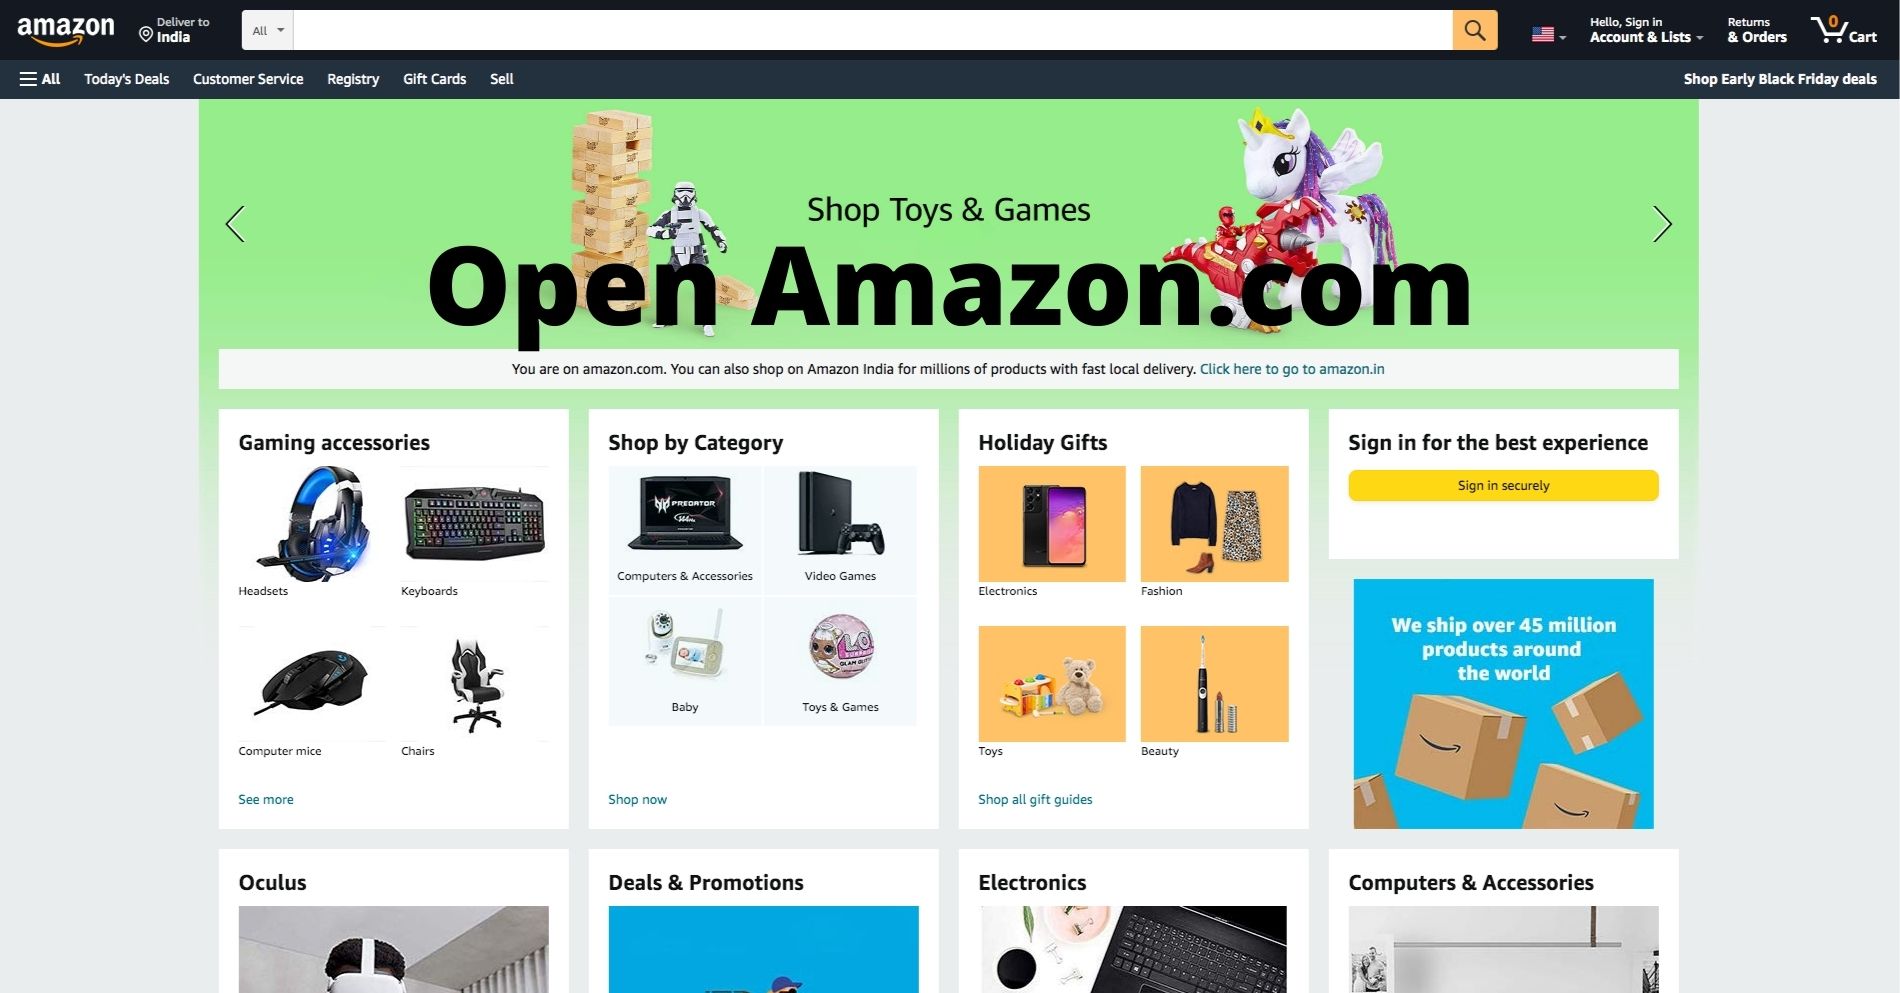 Open Amazon.com